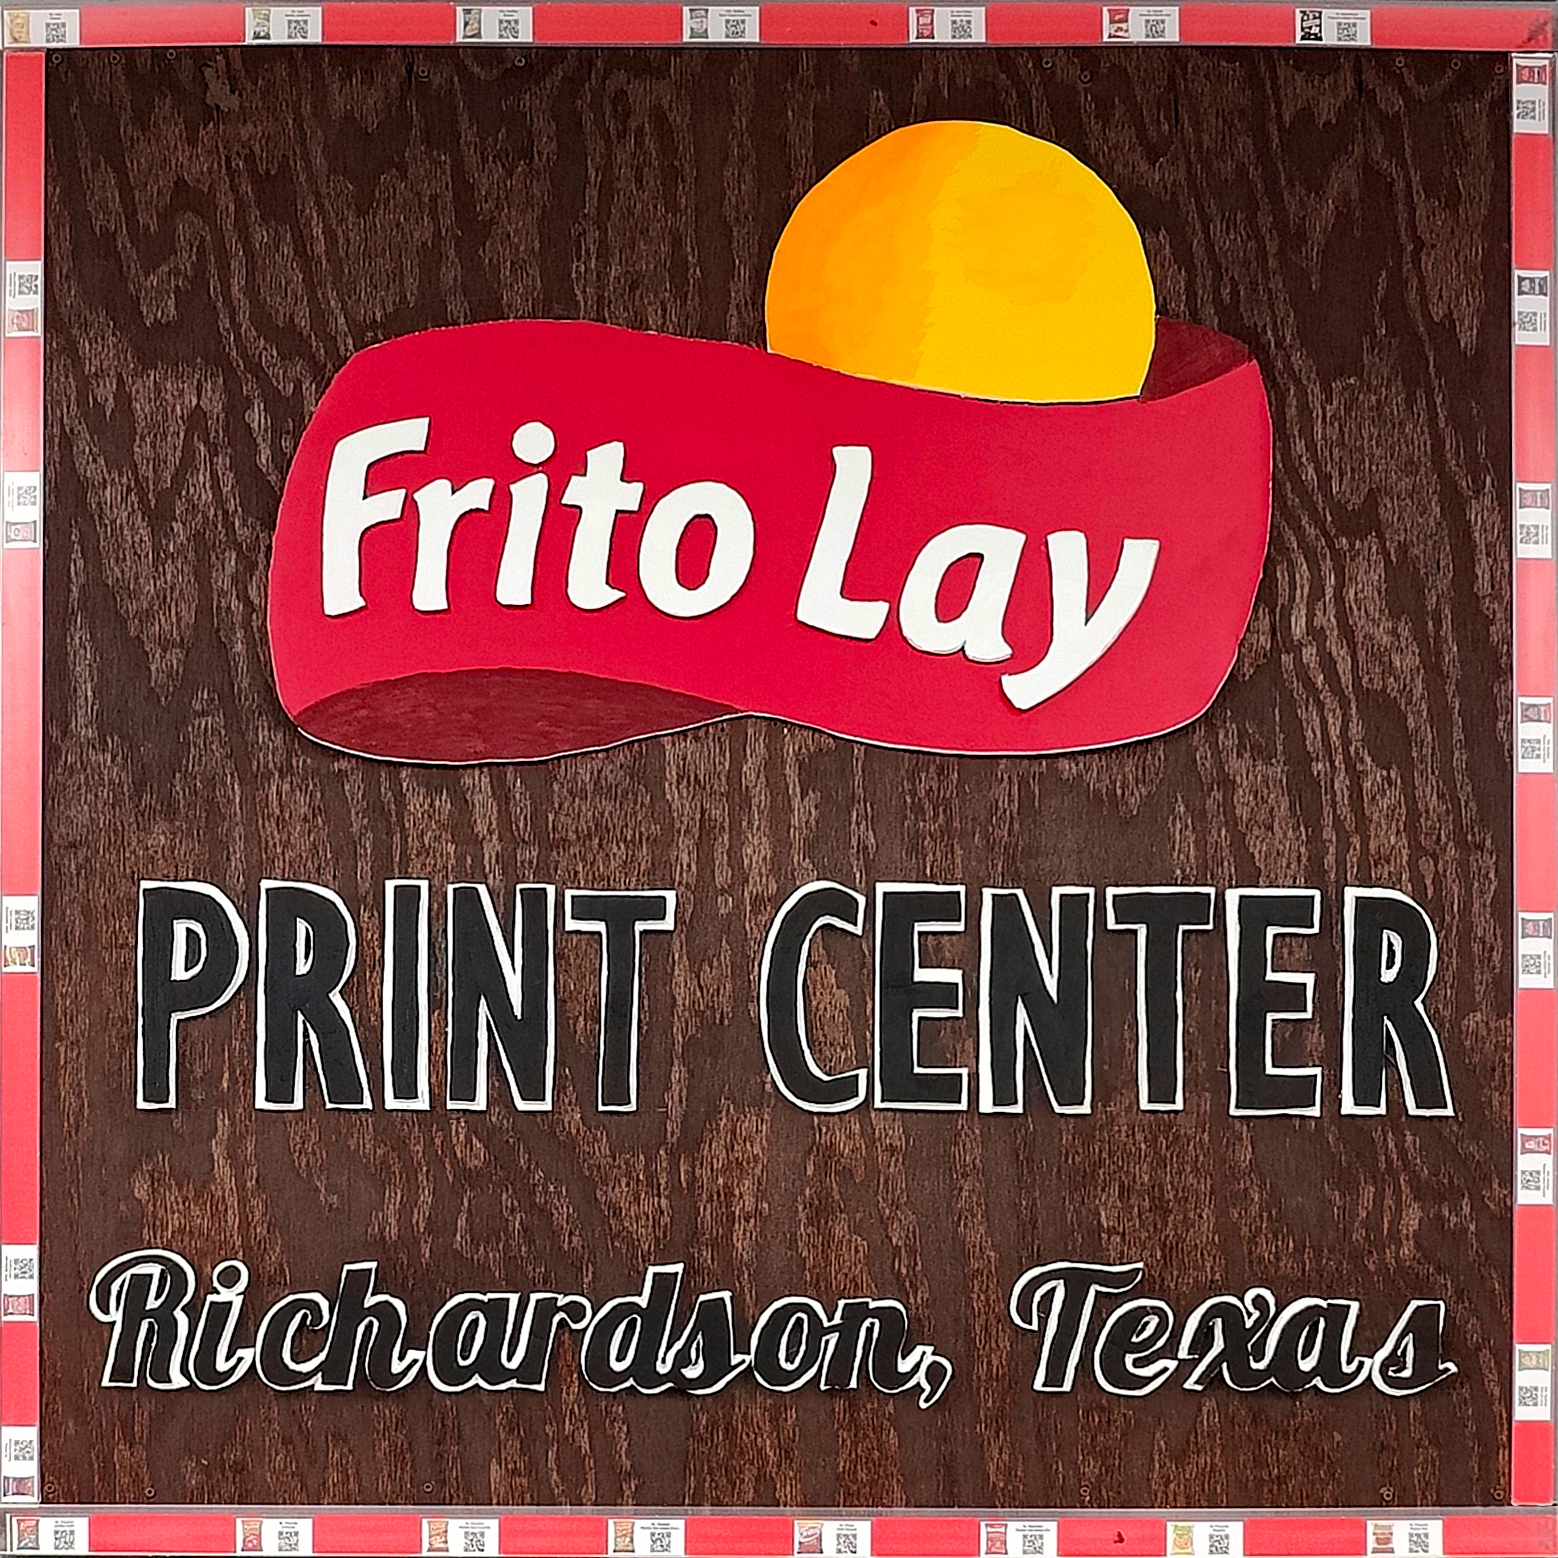 Tiskové centrum Frito Lay používá tiskárny Afinia Label L801 k aktualizaci policových proužků